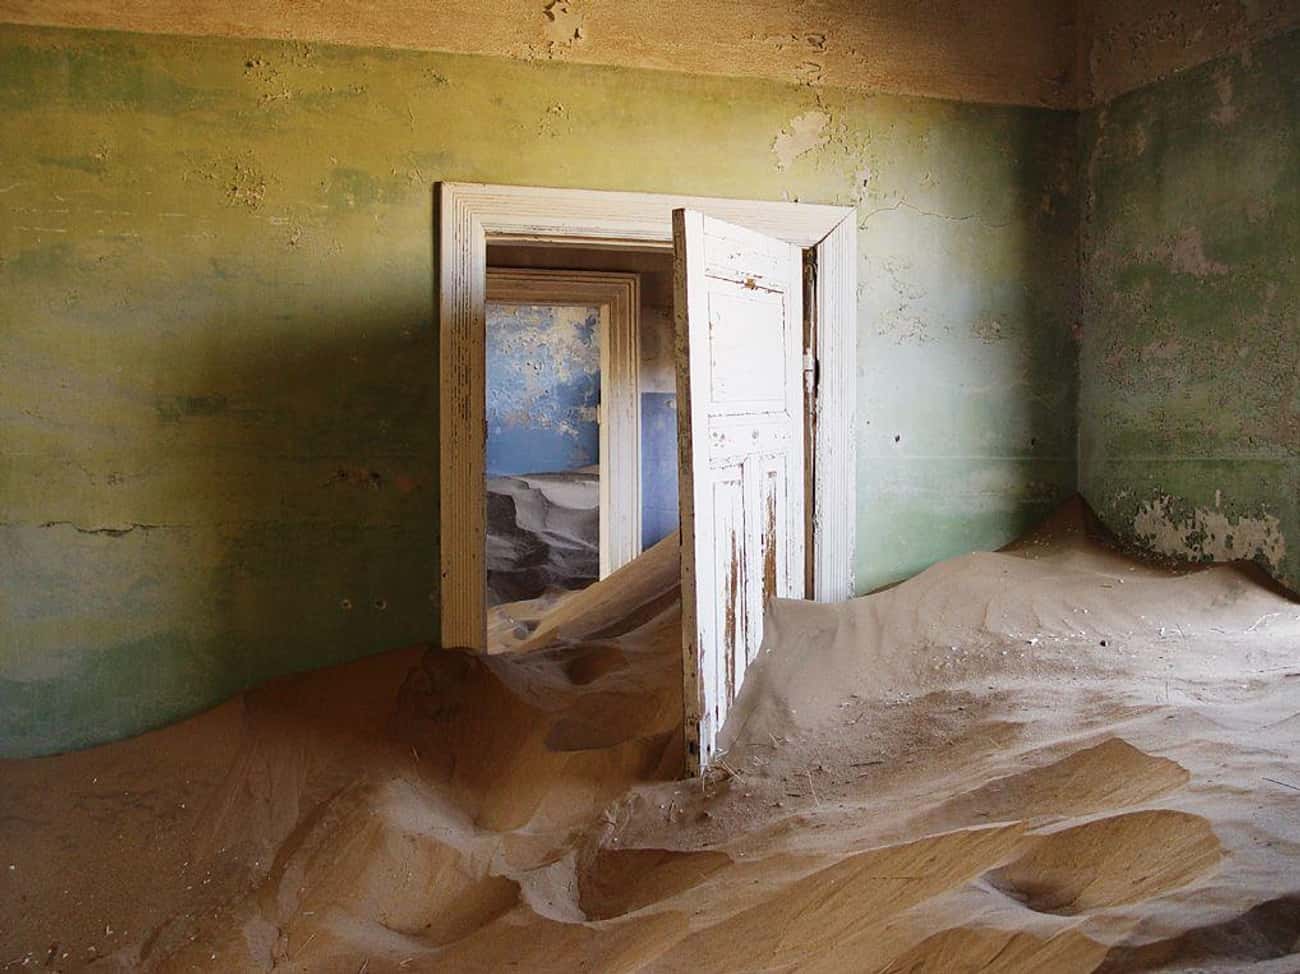 Kolmanskop, Namibia: Swallowed by Sand